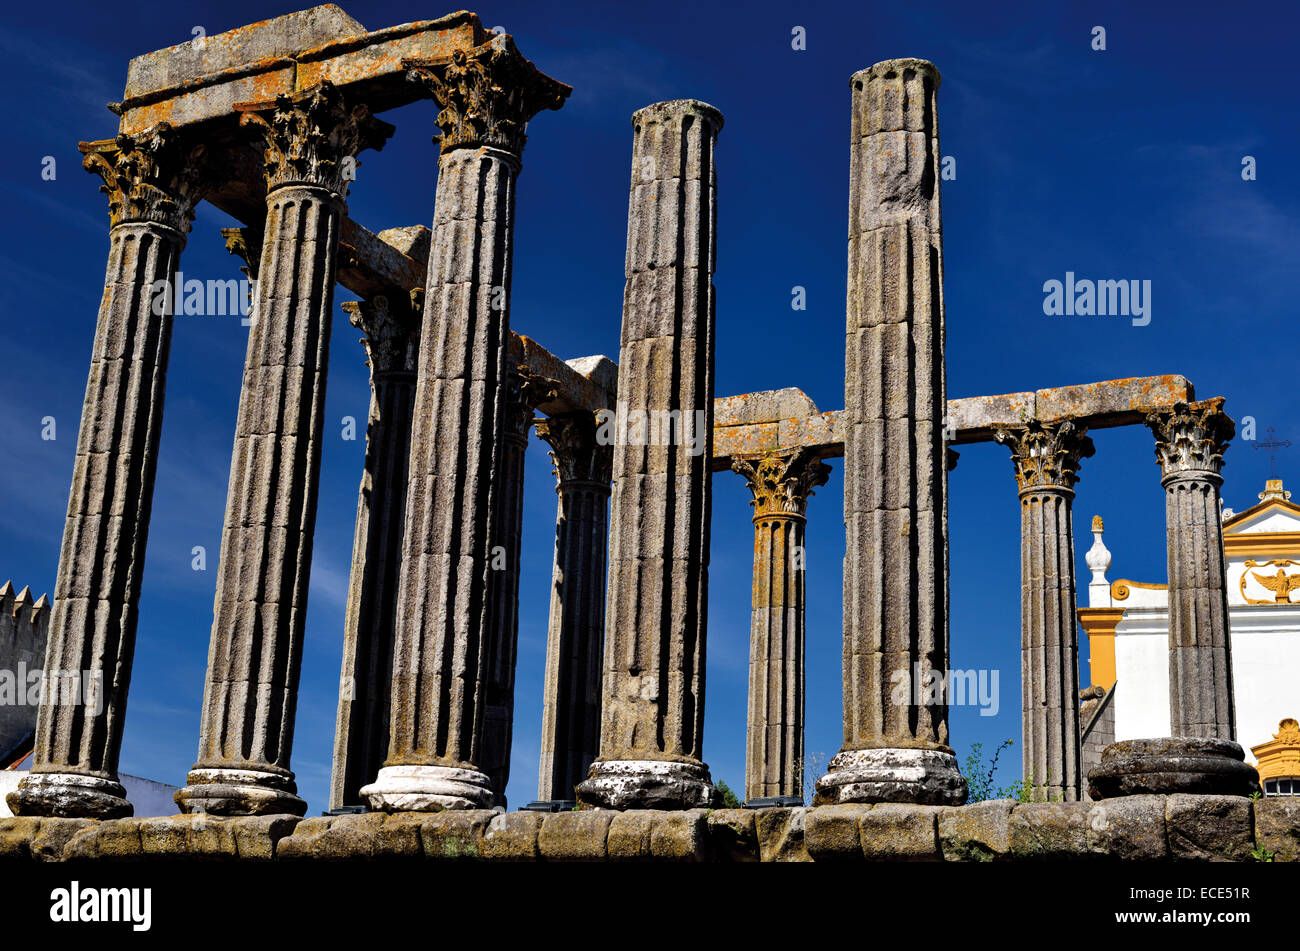 Le Portugal, l'Alentejo : temple romain dans la ville historique d'Évora Banque D'Images